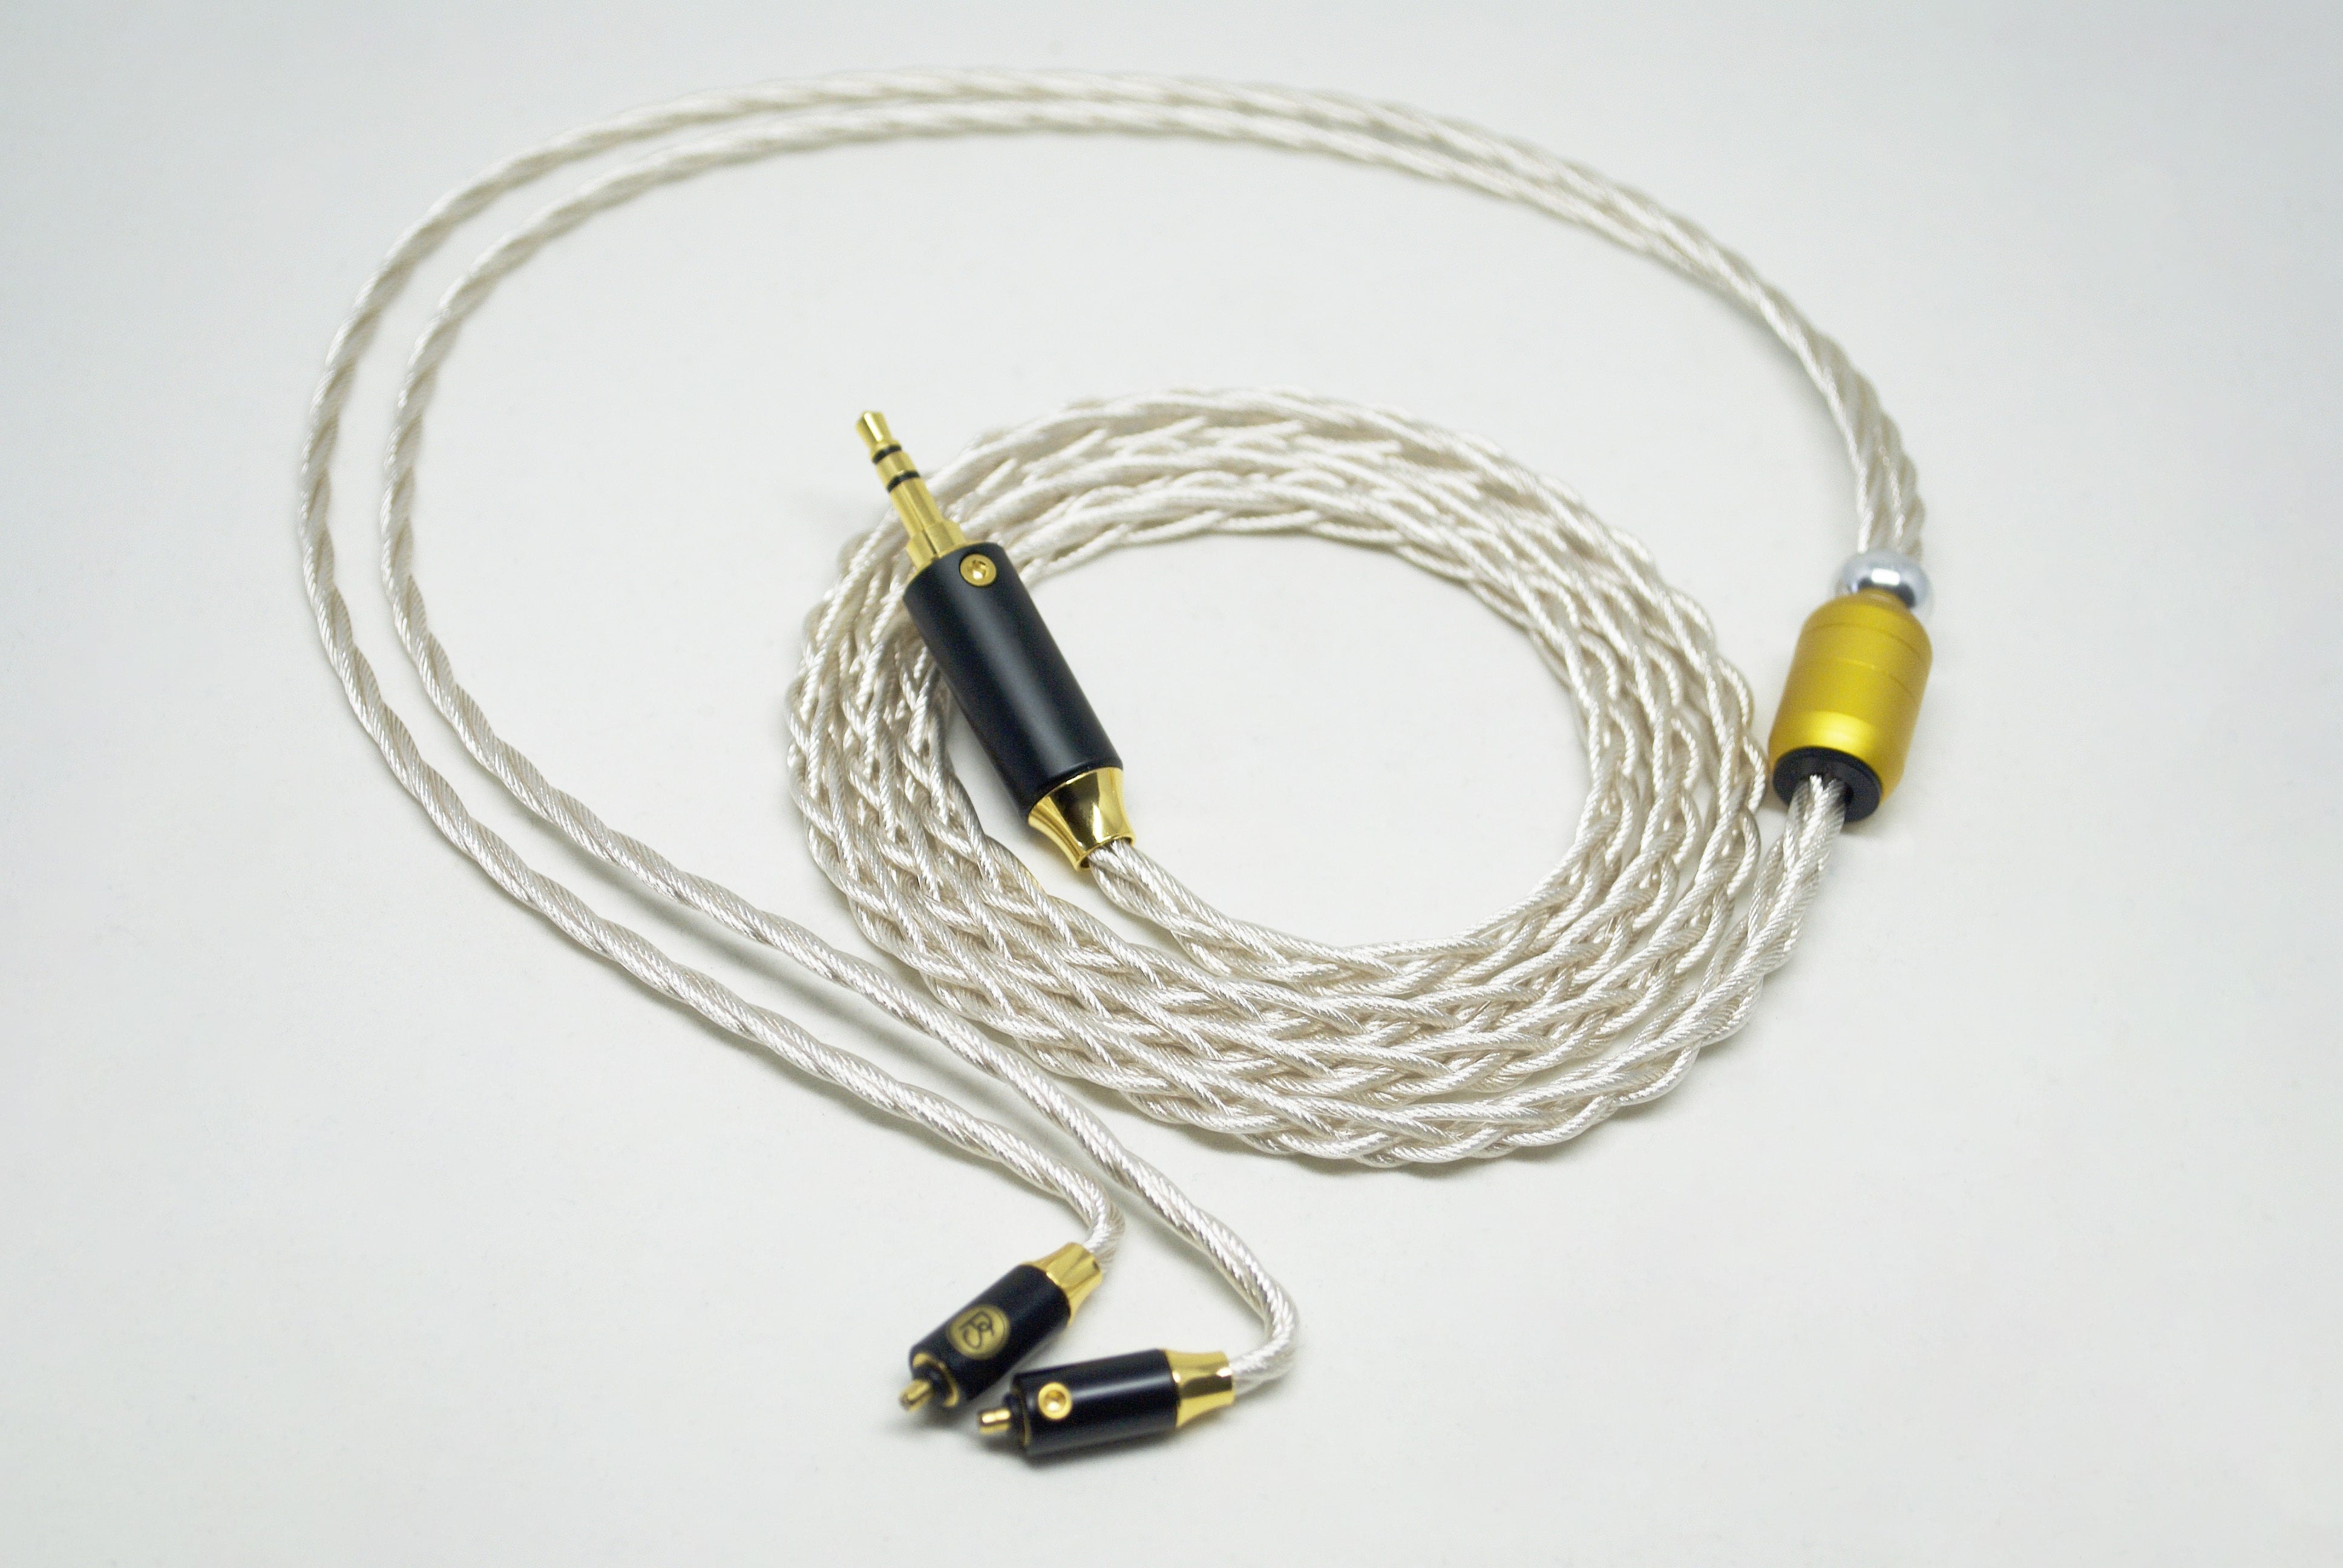 PLUSSOUND X6 Series Cable (IEM Version)